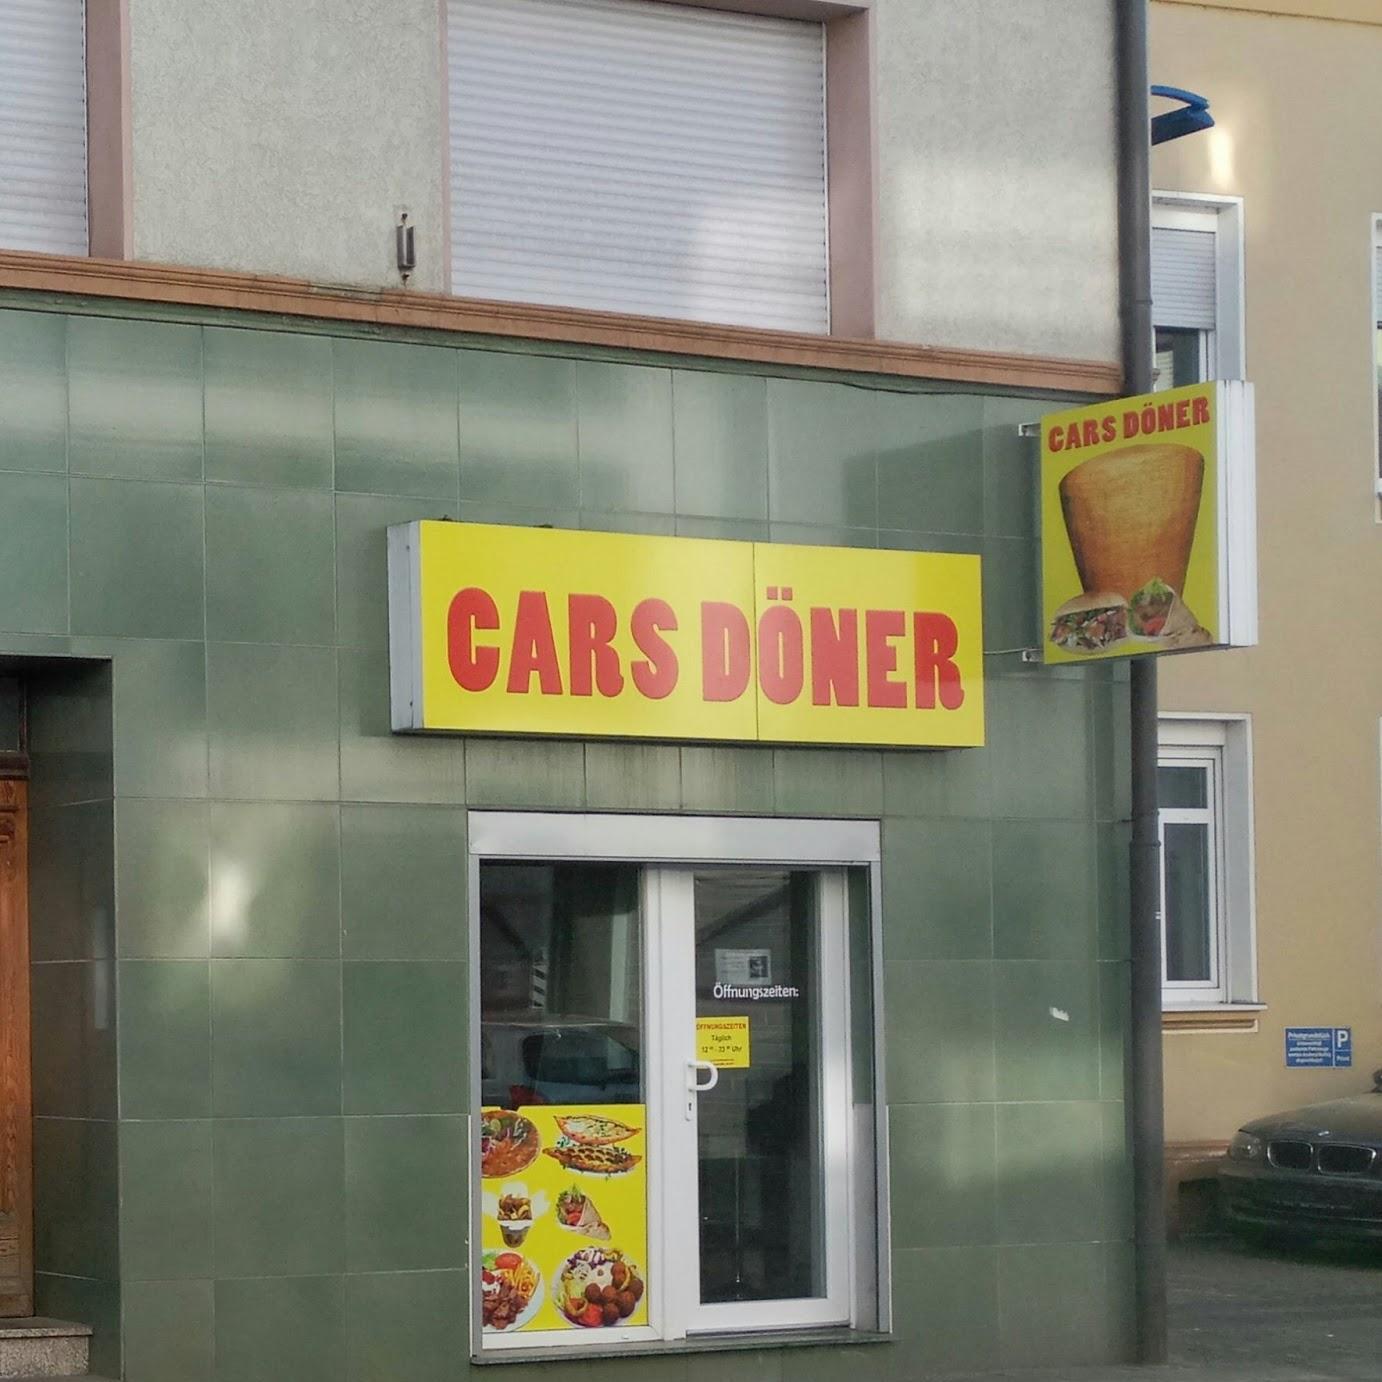 Restaurant "Cars Döner" in Niederkassel